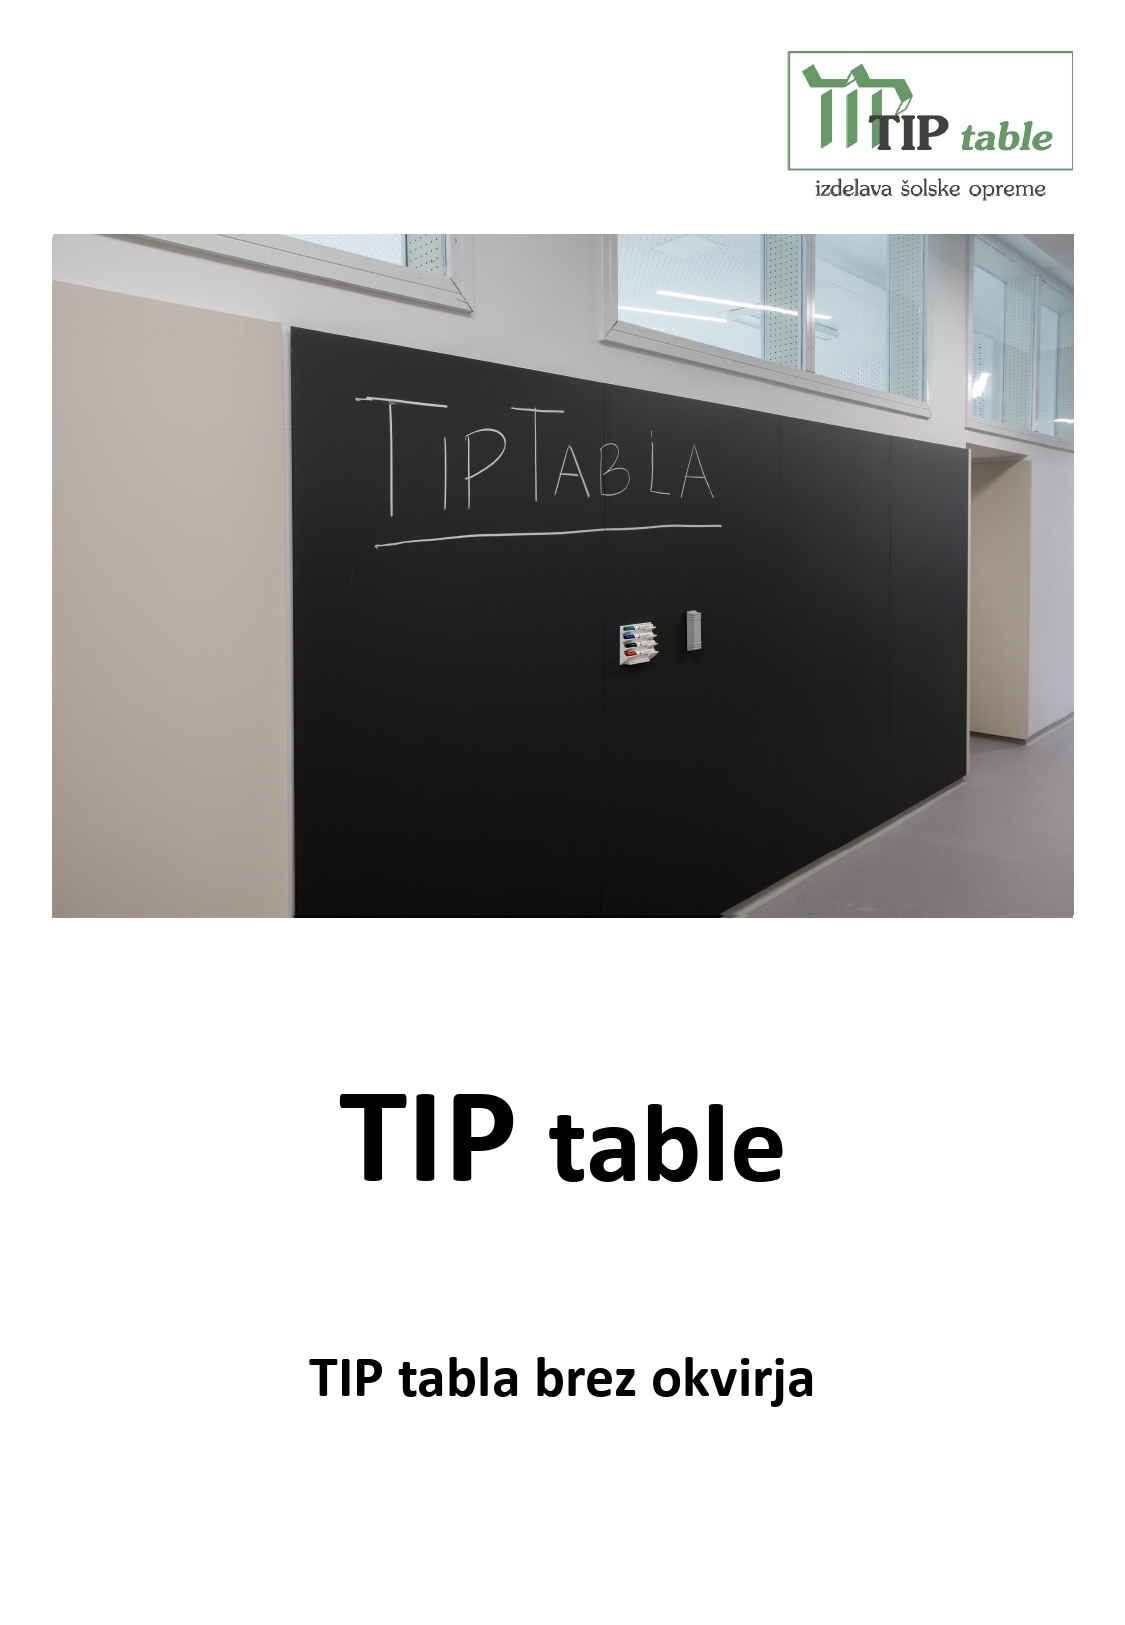 TIP tabla brez okvirja